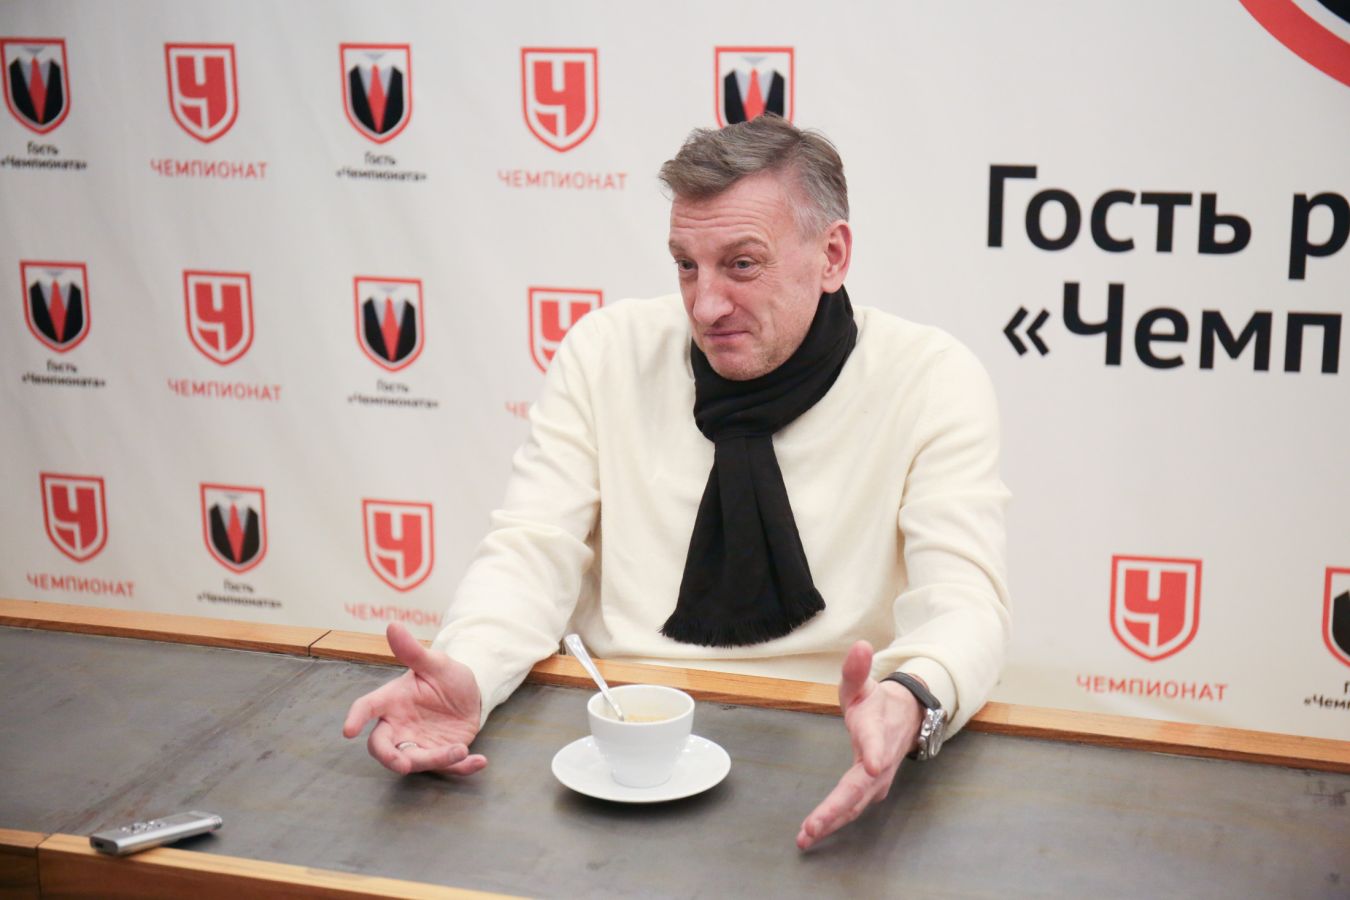 Кузнецов: дисквалифицировать Соболева на четыре матча — абсолютно справедливое решение!